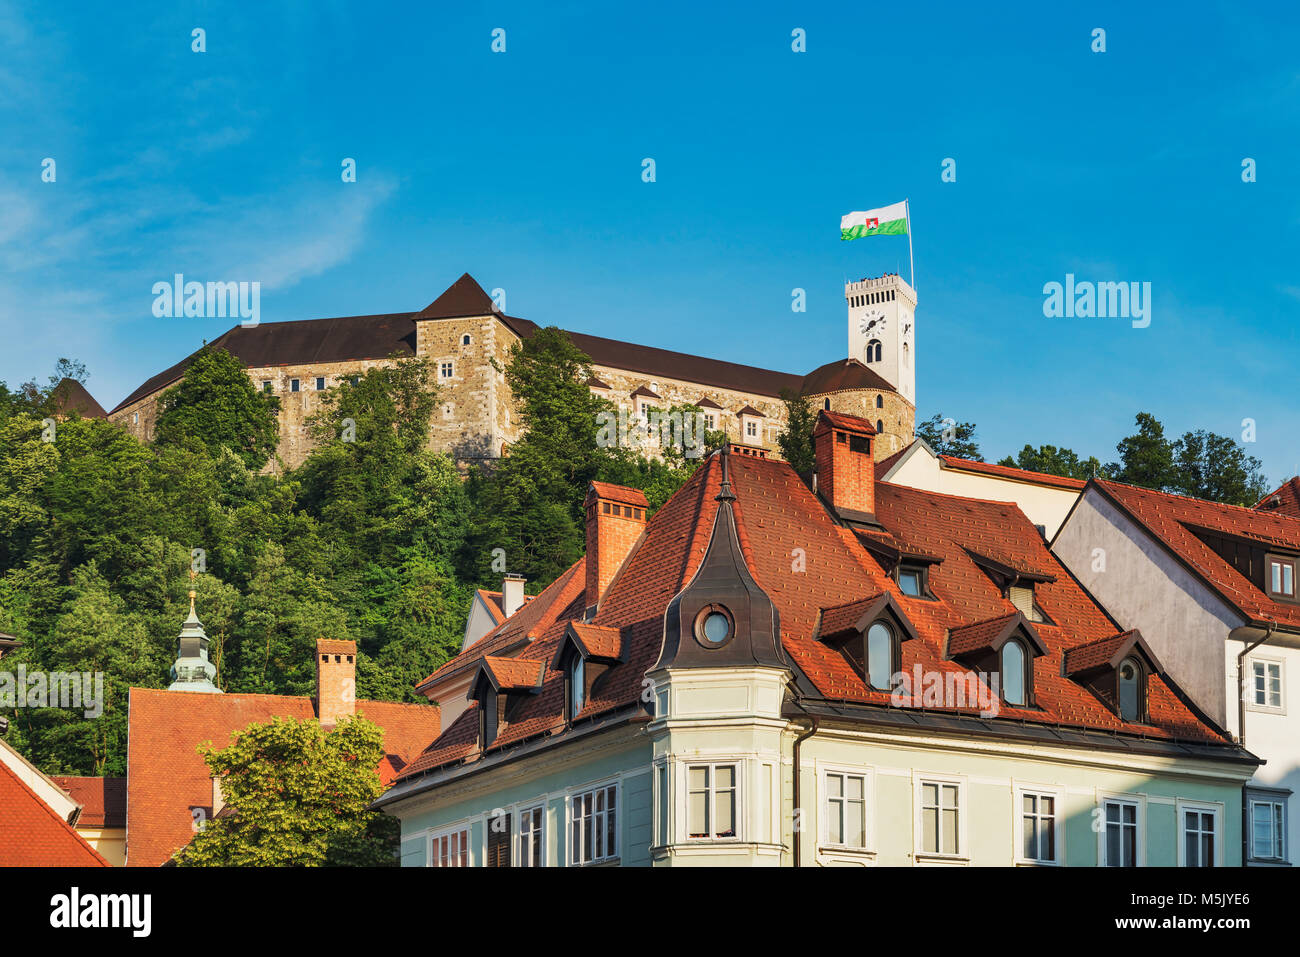 Blick von der Altstadt von Ljubljana, das Schloss von Ljubljana. Die Burg von Ljubljana ist eine mächtige mittelalterliche Festung und das Symbol der Hauptstadt. Stockfoto